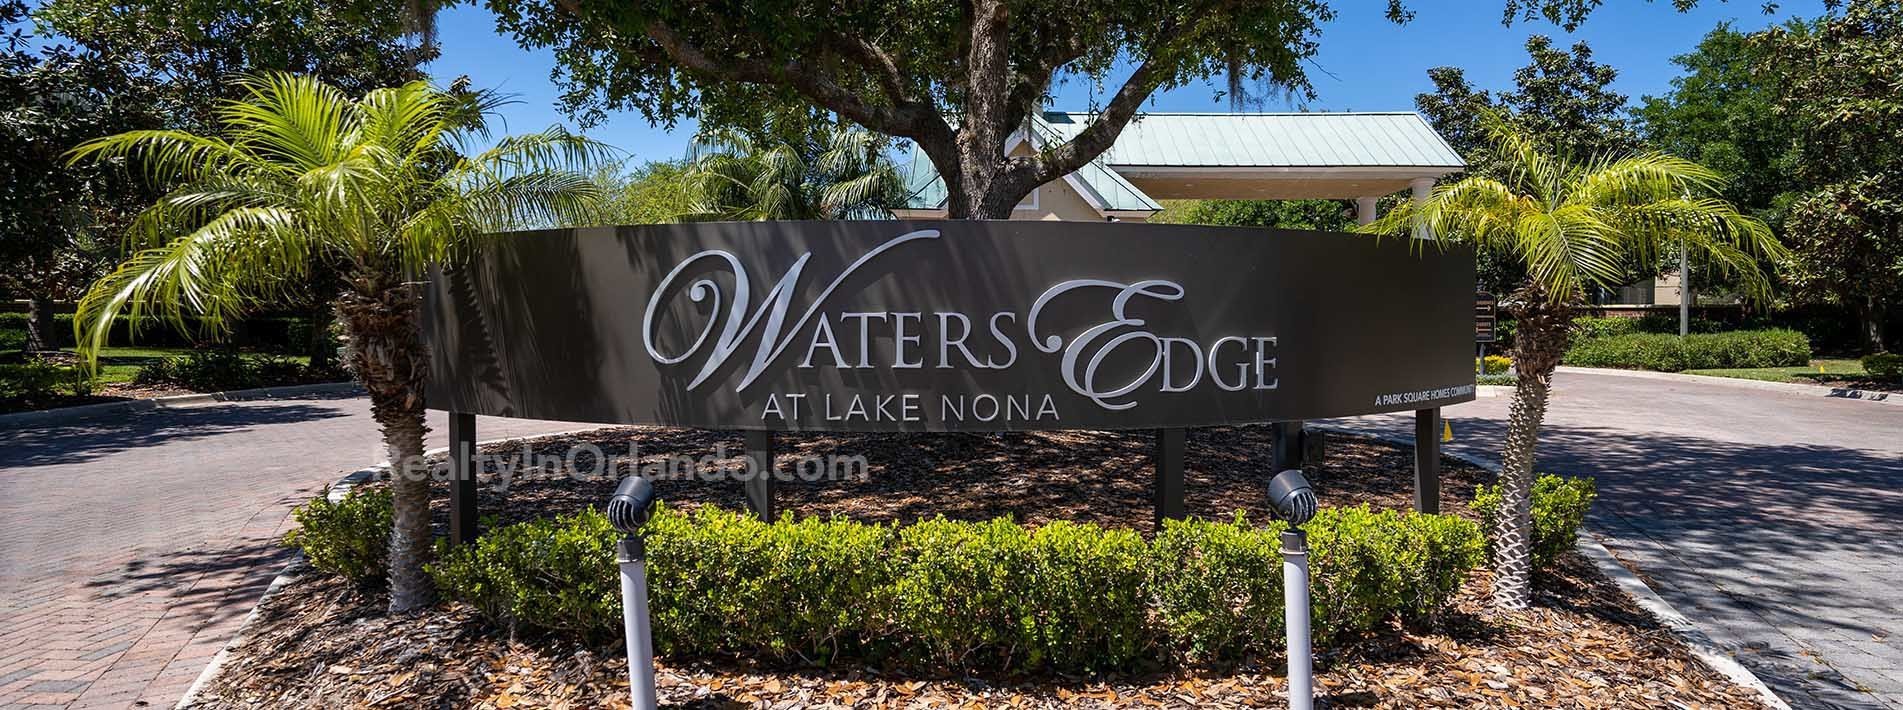 Waters Edge at Lake Nona Real Estate